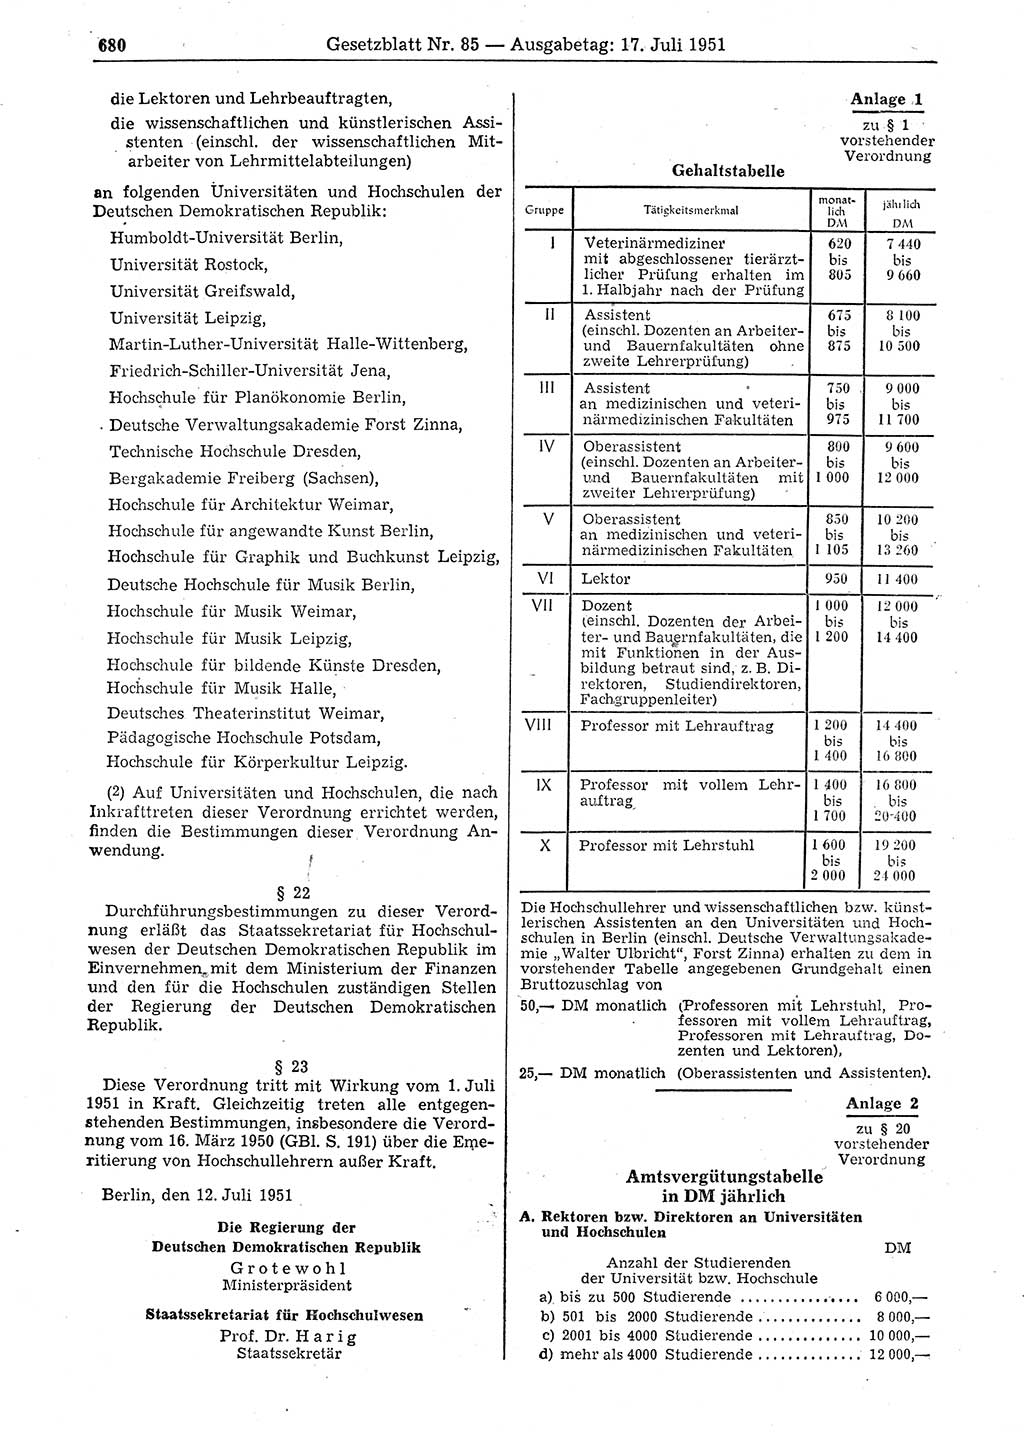 Gesetzblatt (GBl.) der Deutschen Demokratischen Republik (DDR) 1951, Seite 680 (GBl. DDR 1951, S. 680)